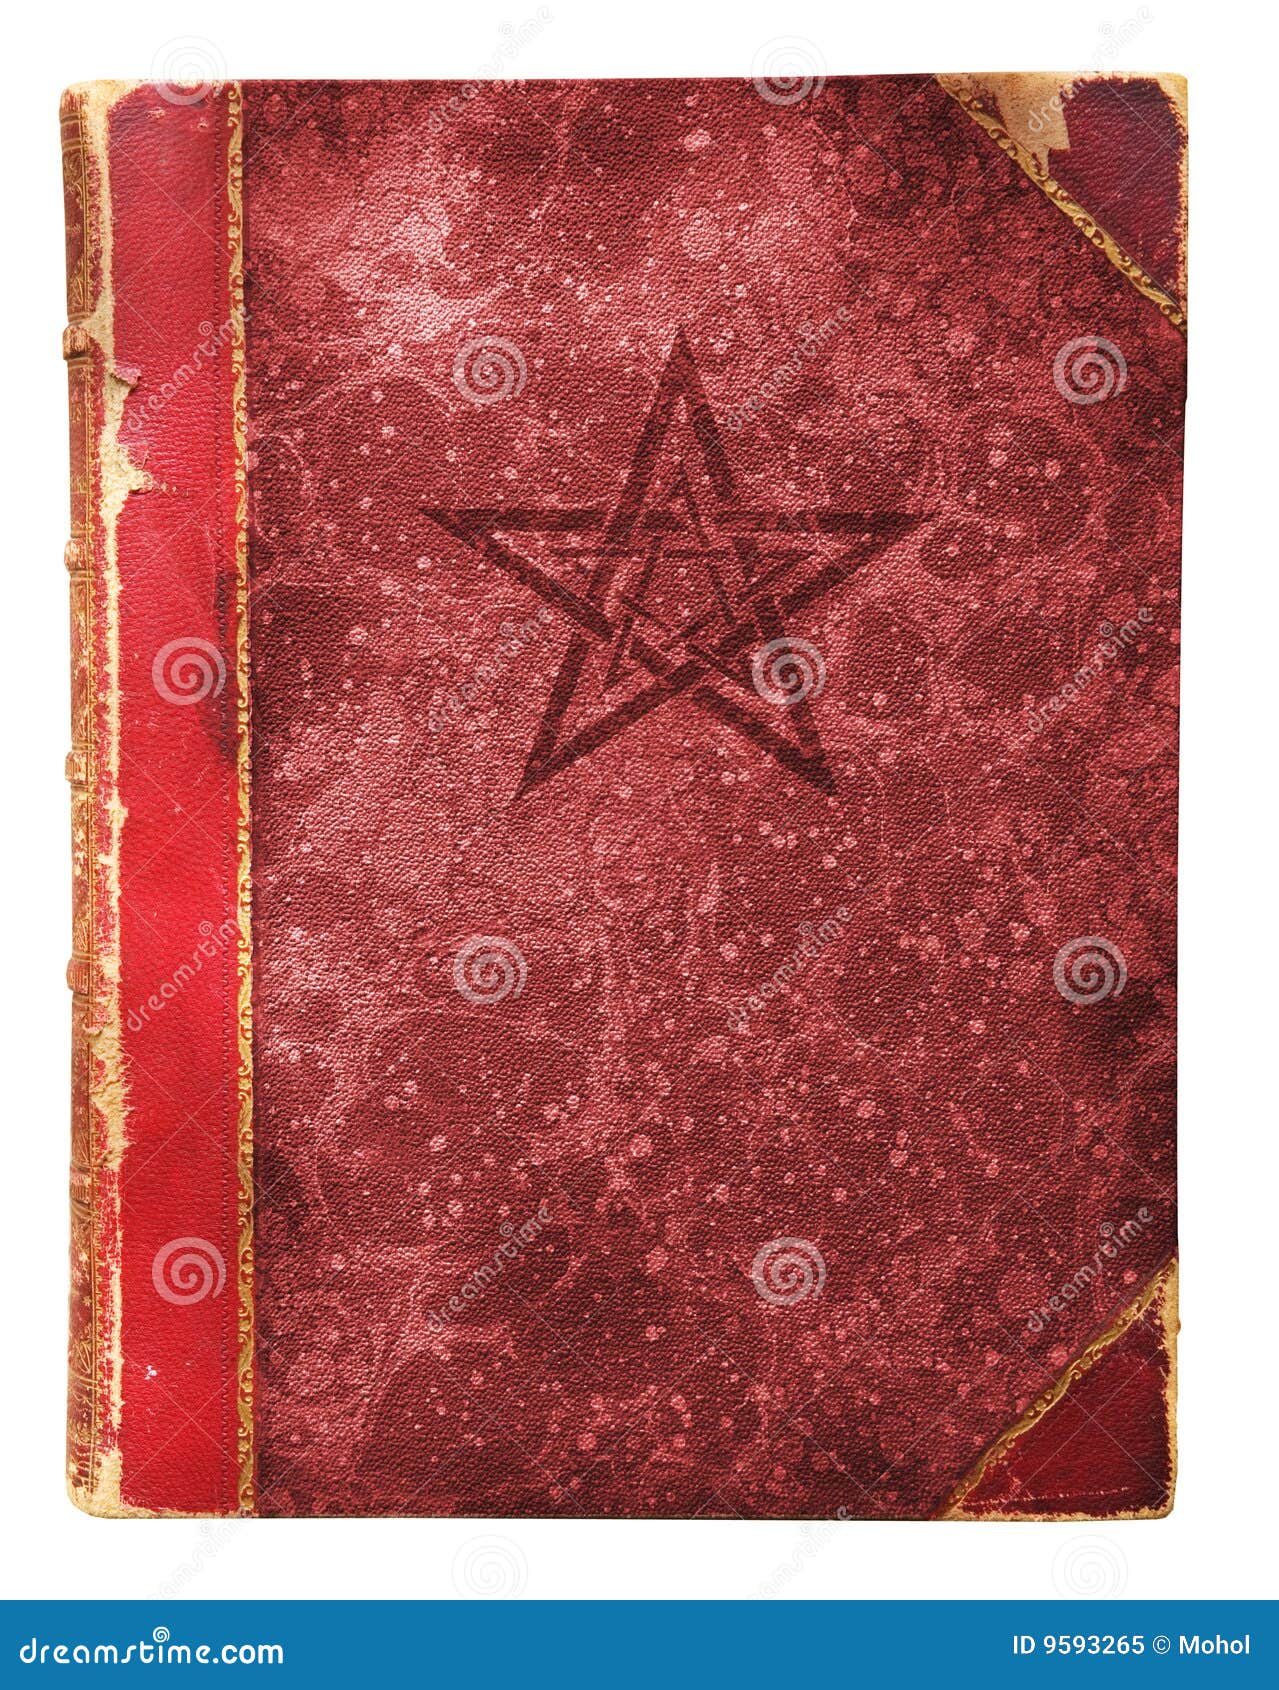 occult book